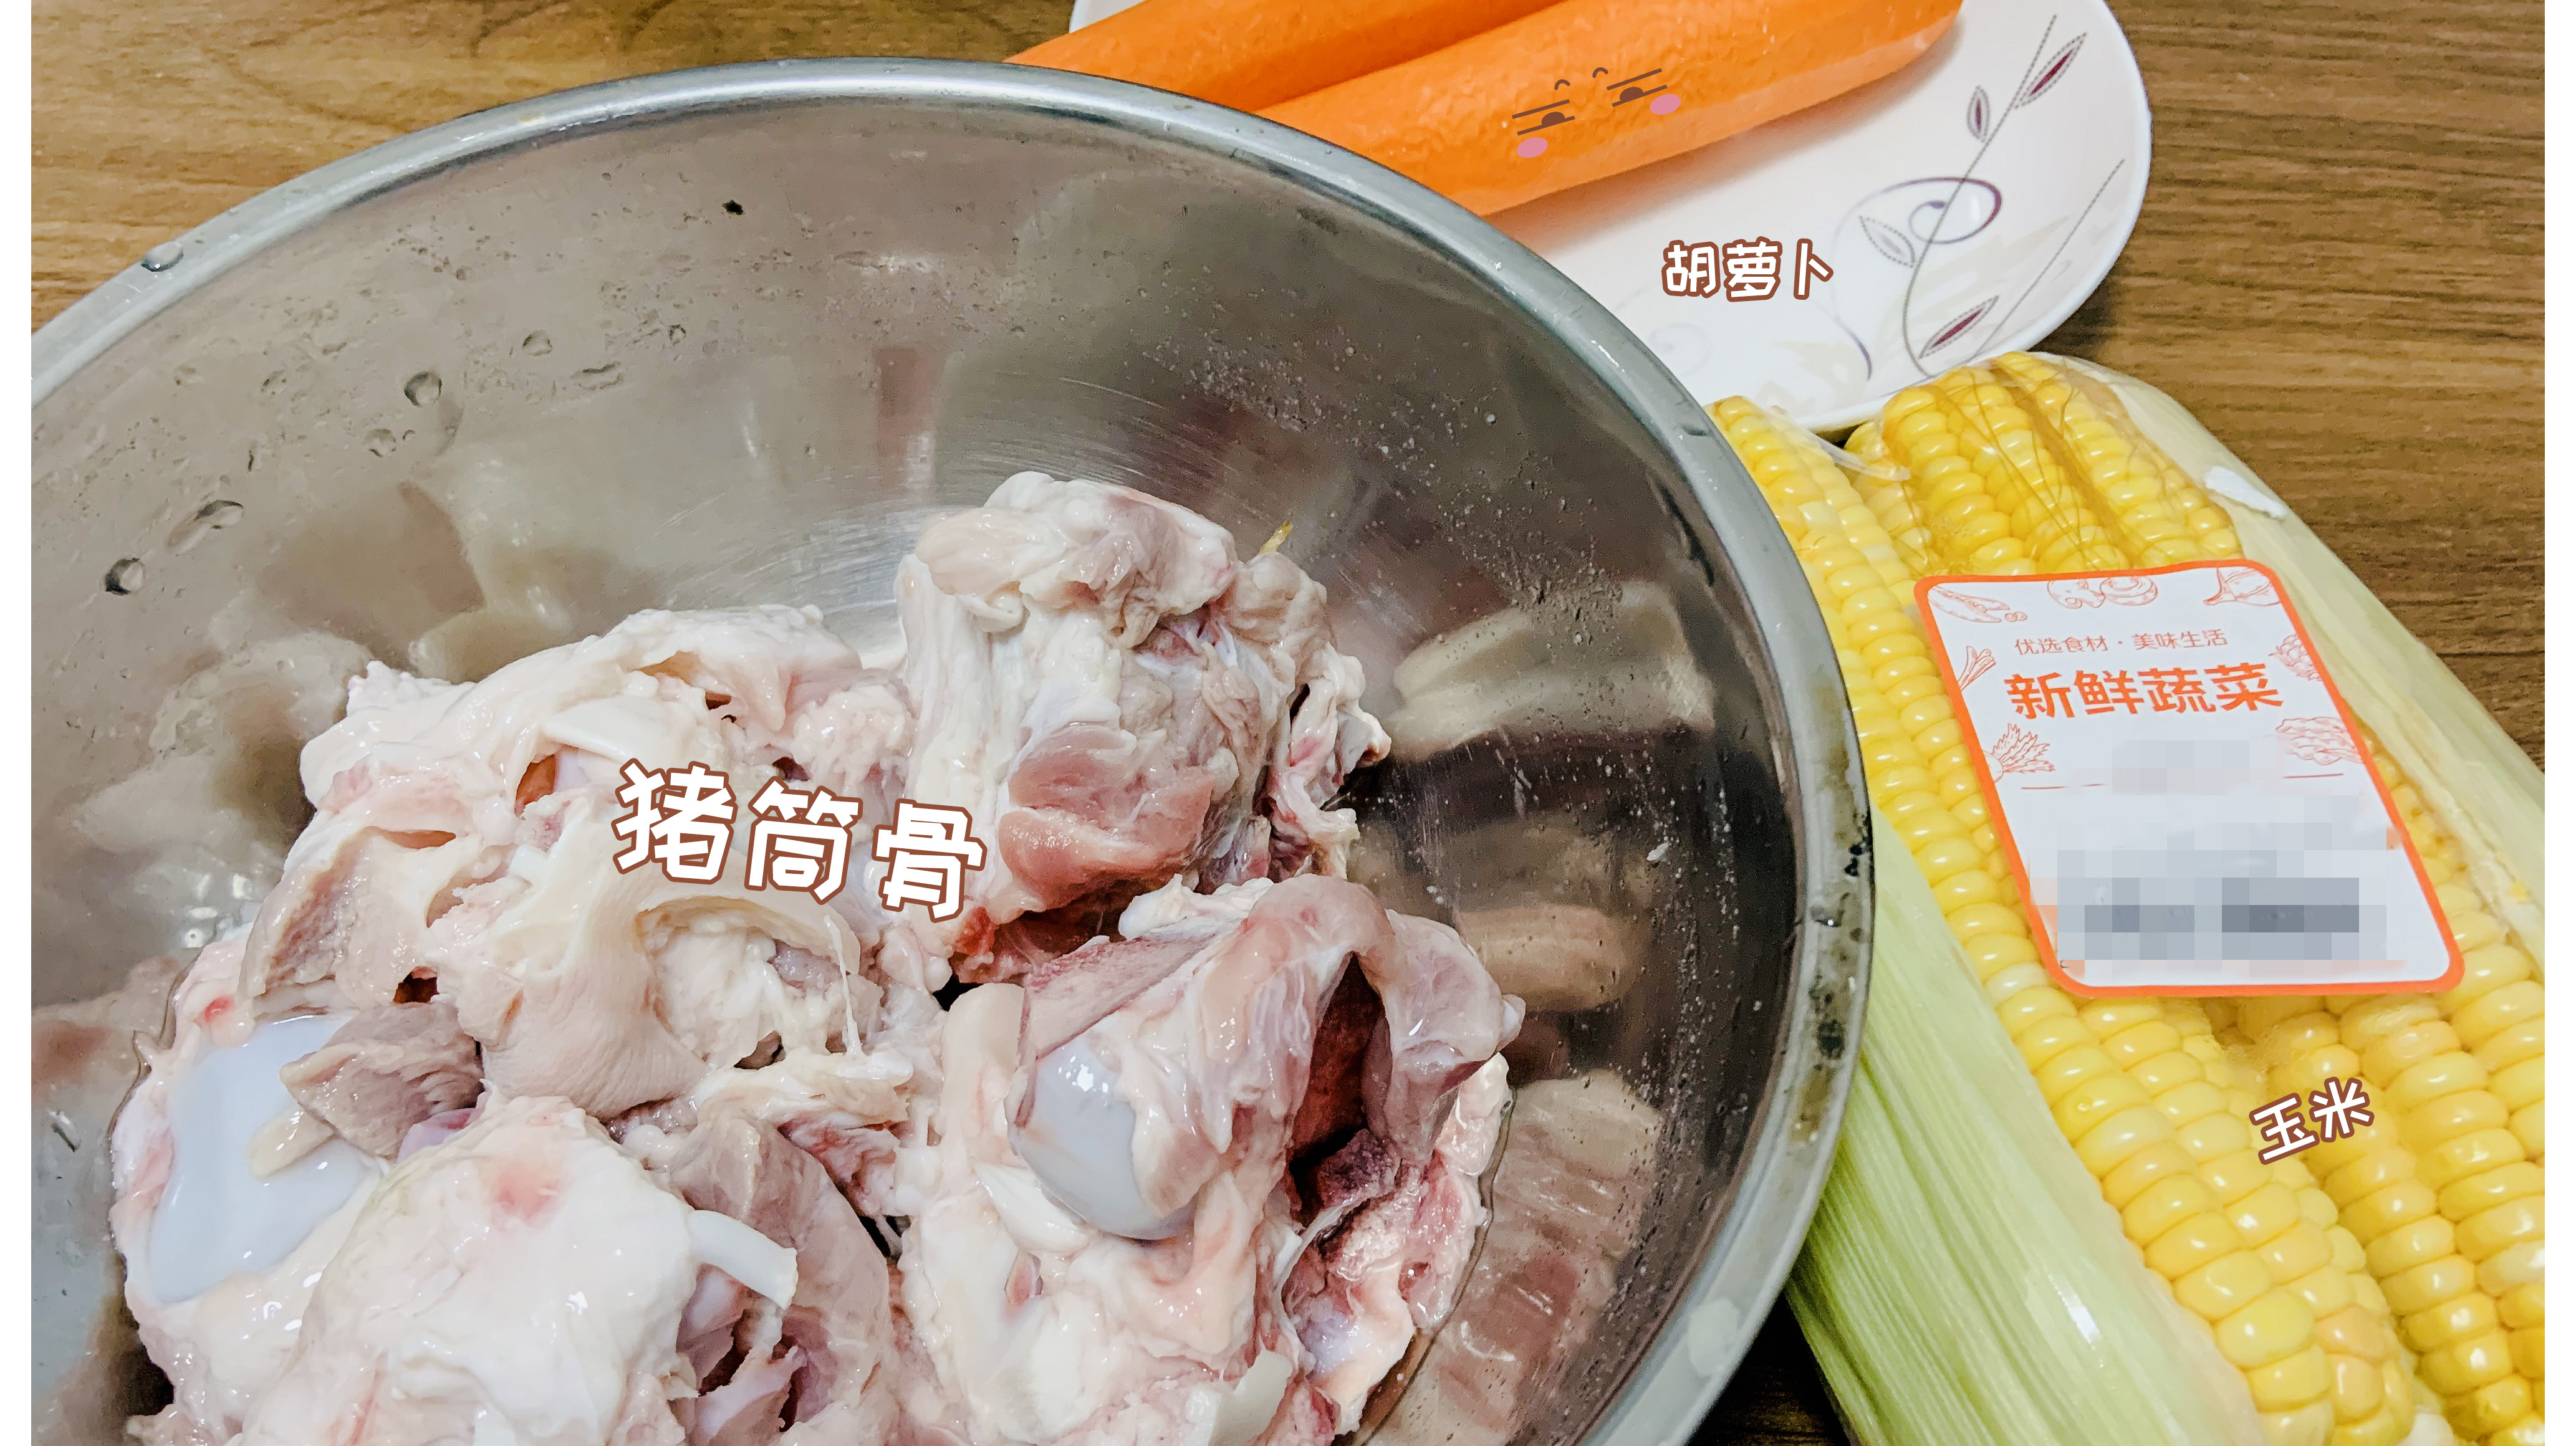 用料少的高压锅版玉米胡萝卜筒骨汤